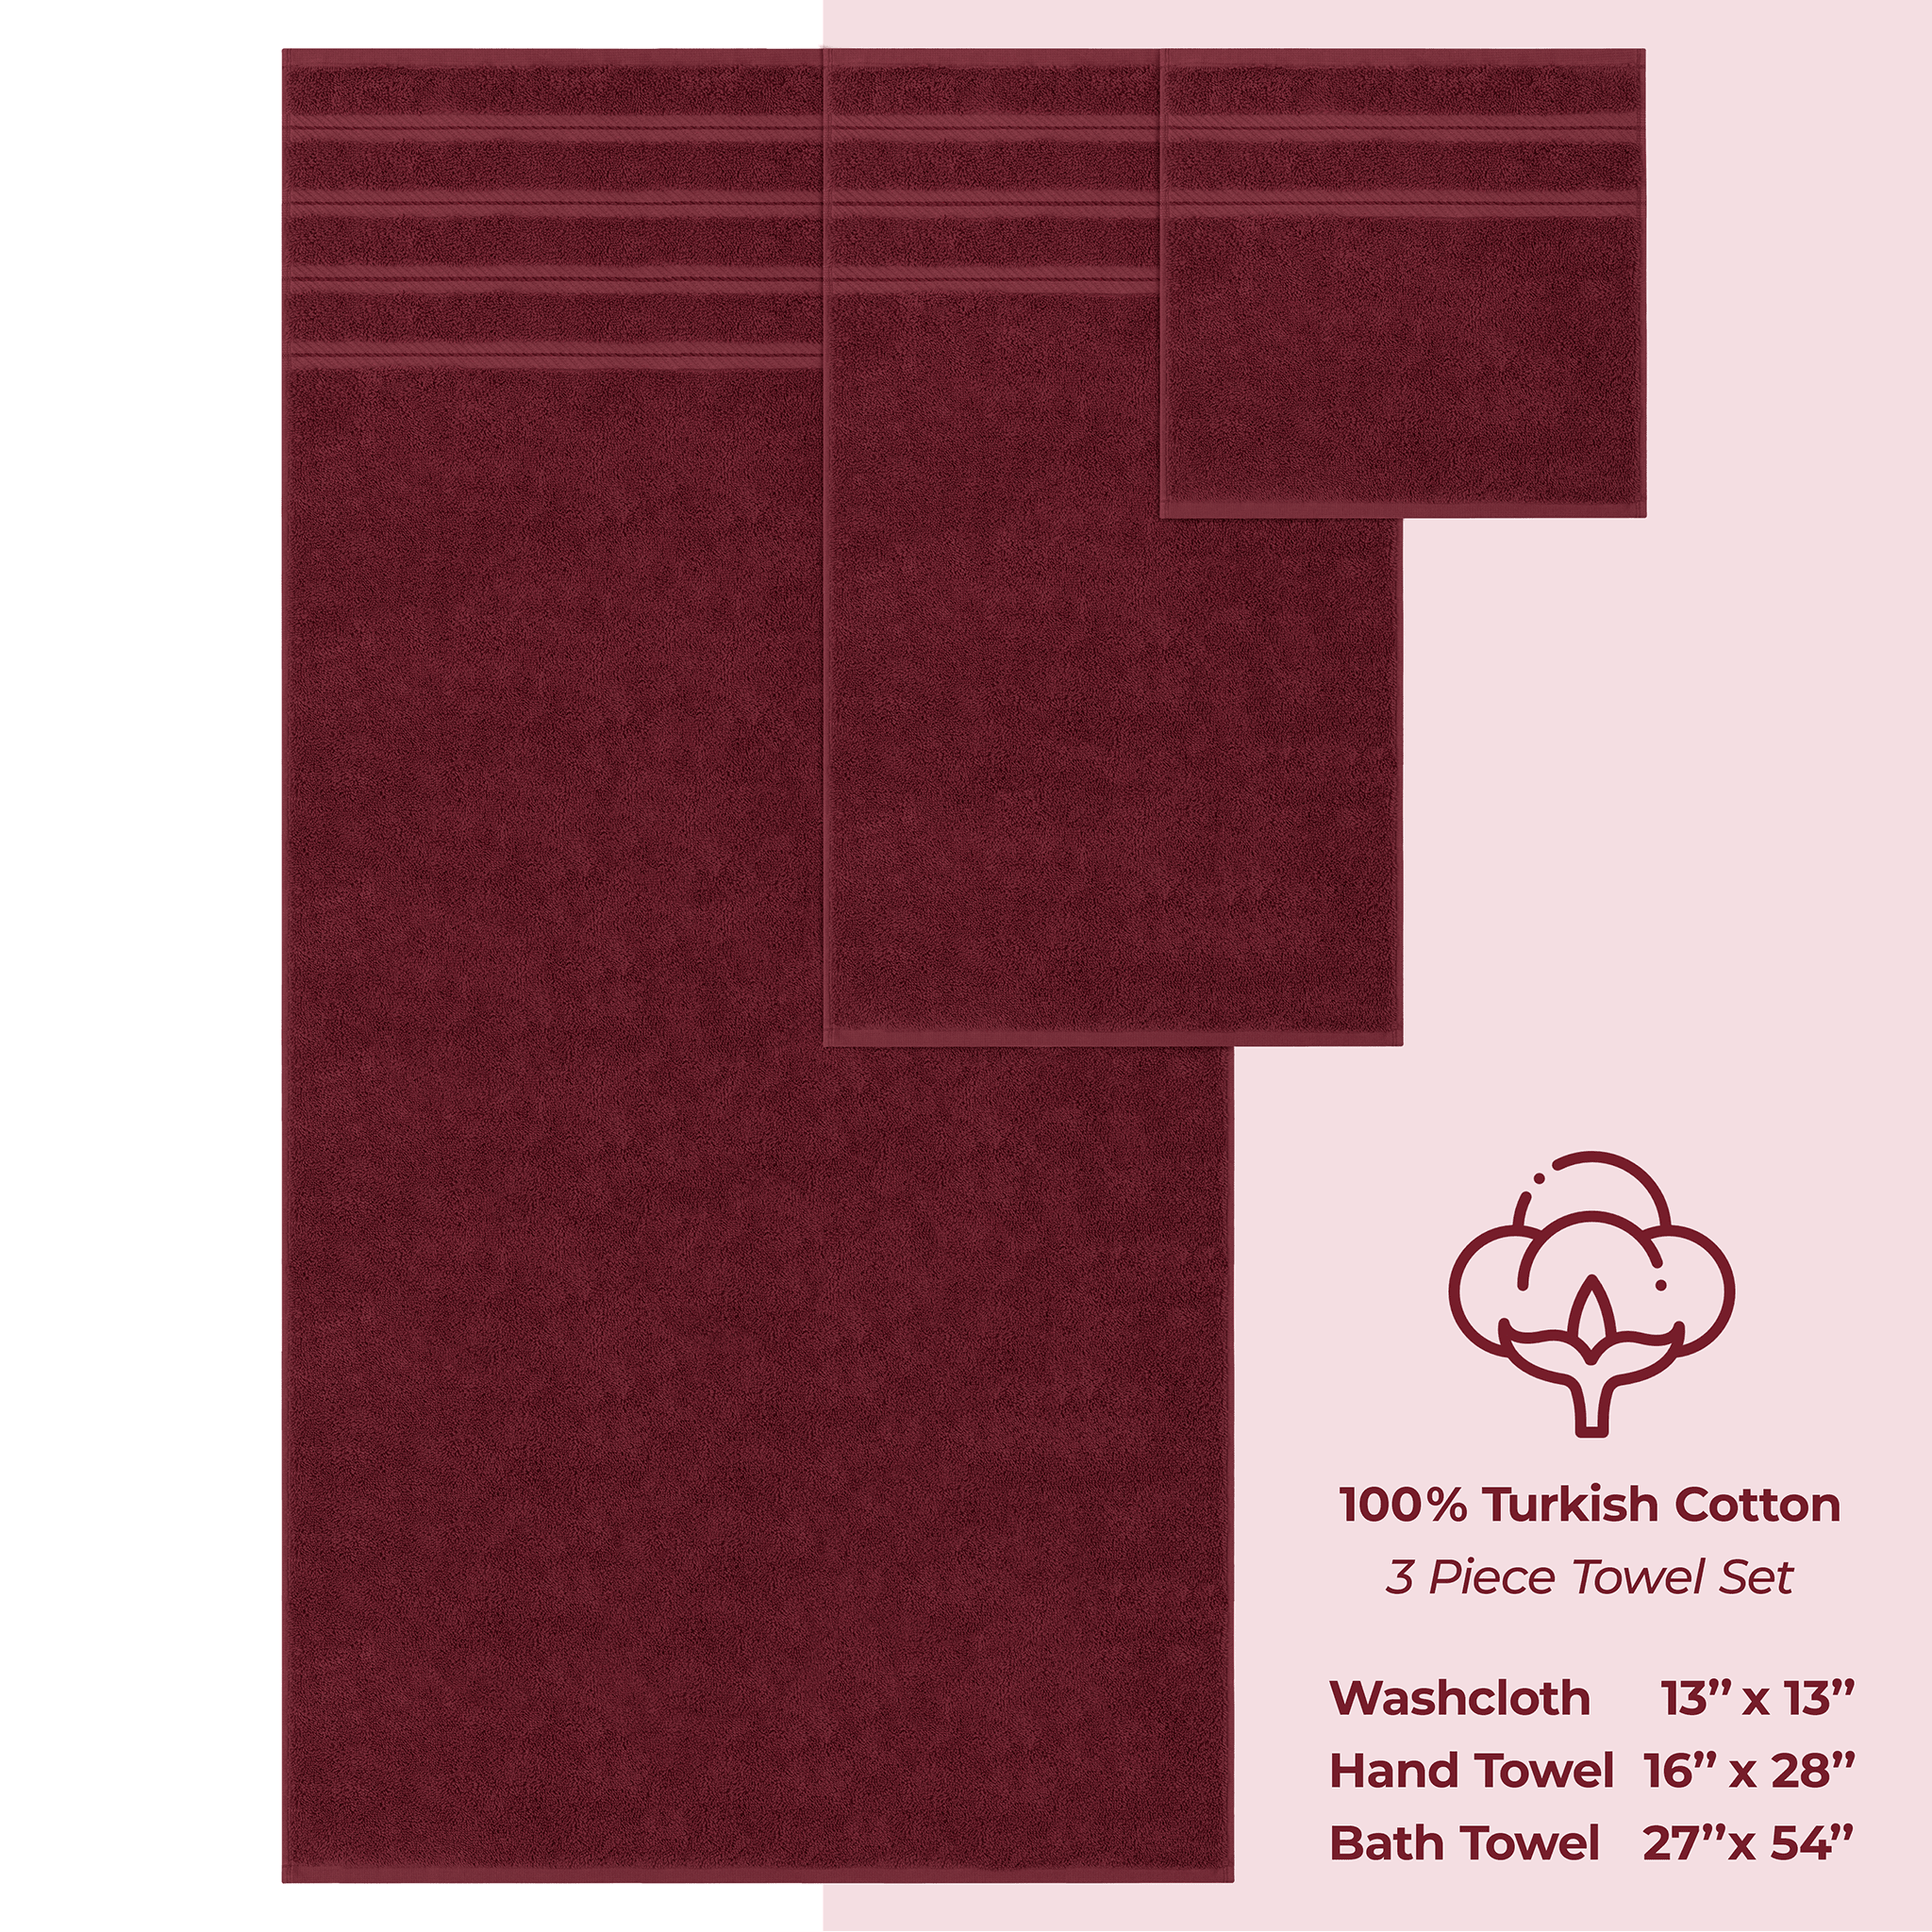 American Soft Linen - 3 Piece Turkish Cotton Towel Set - Bordeaux-Red - 4